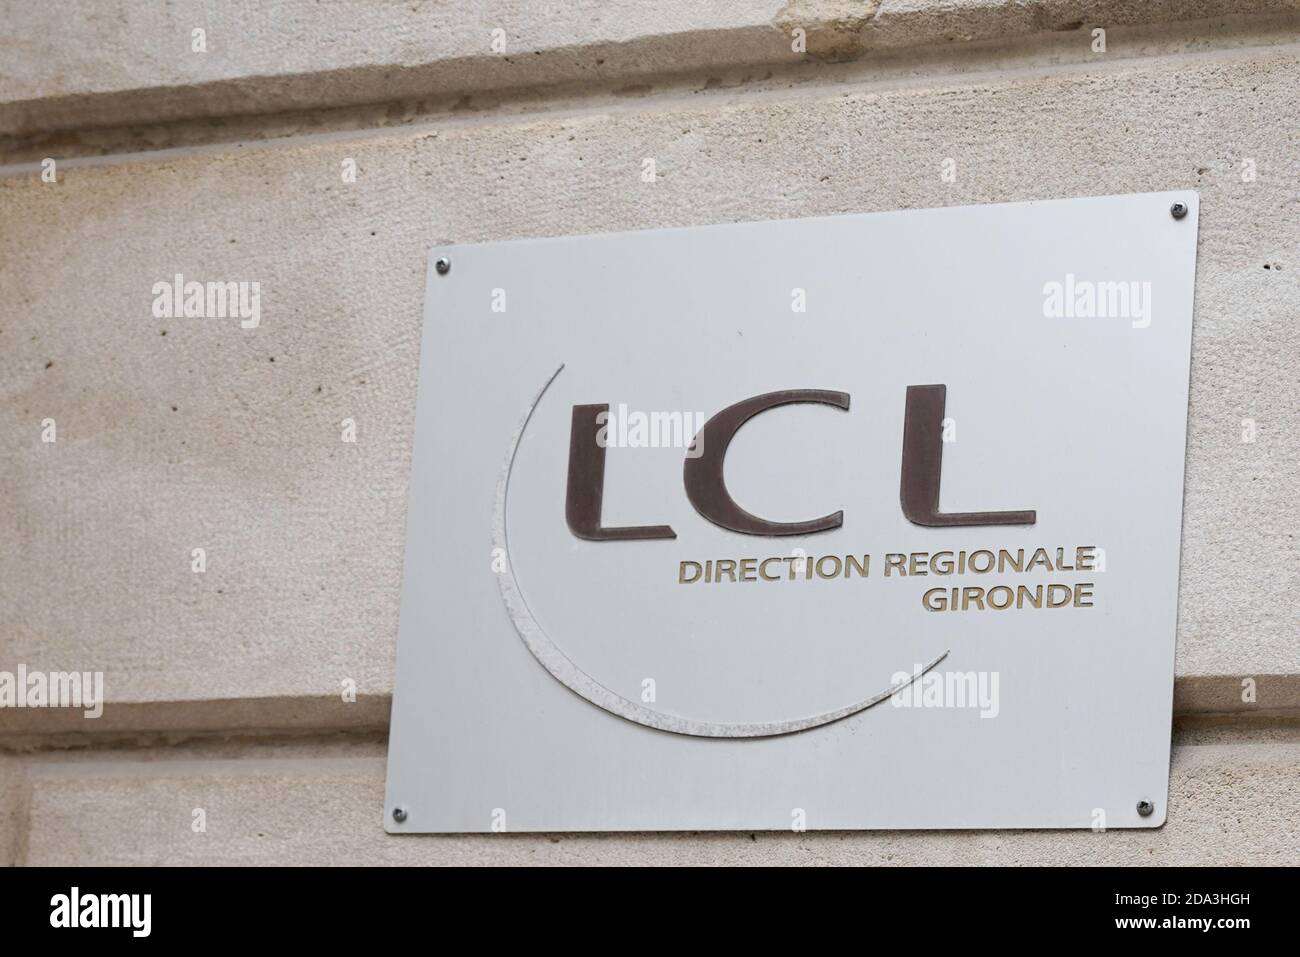 Bordeaux , Aquitaine / France - 11 01 2020 : lcl direction regionale logo and text sign front of building le credit Lyonnais Banque et assurance facad Stock Photo